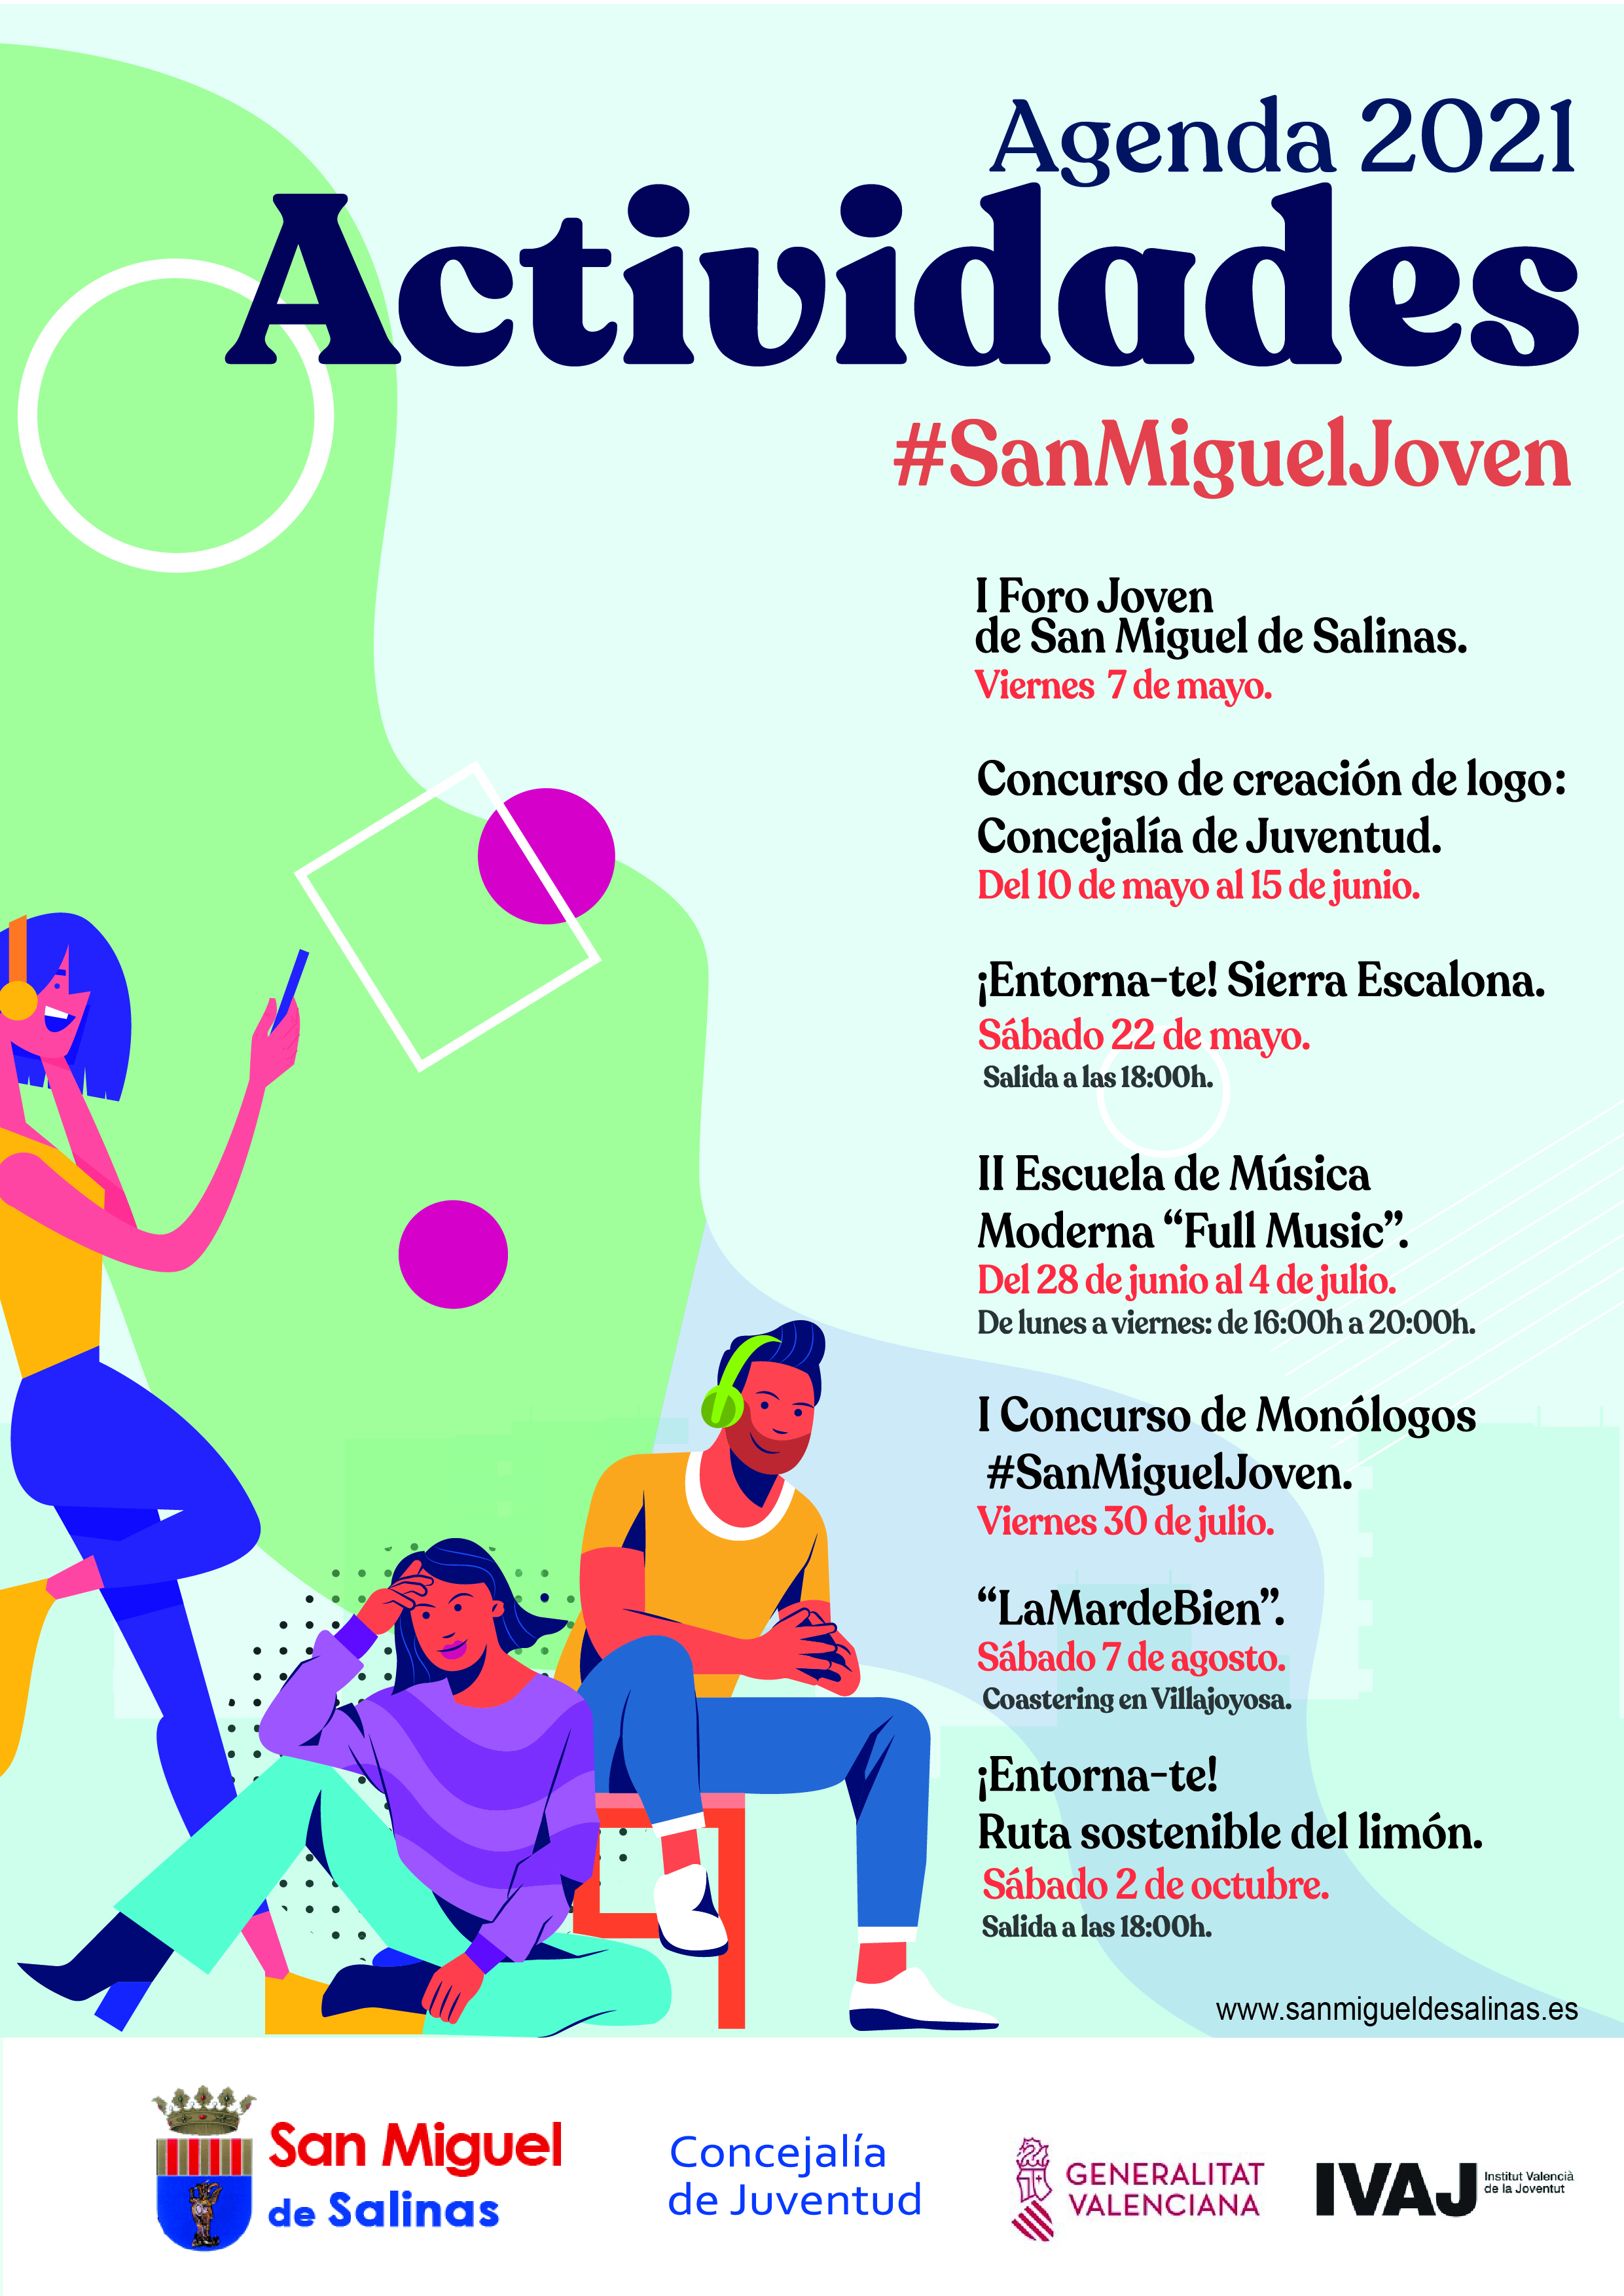 AGENDA 2021. PROGRAMACIÓN #SANMIGUELJOVEN. San Miguel de Salinas